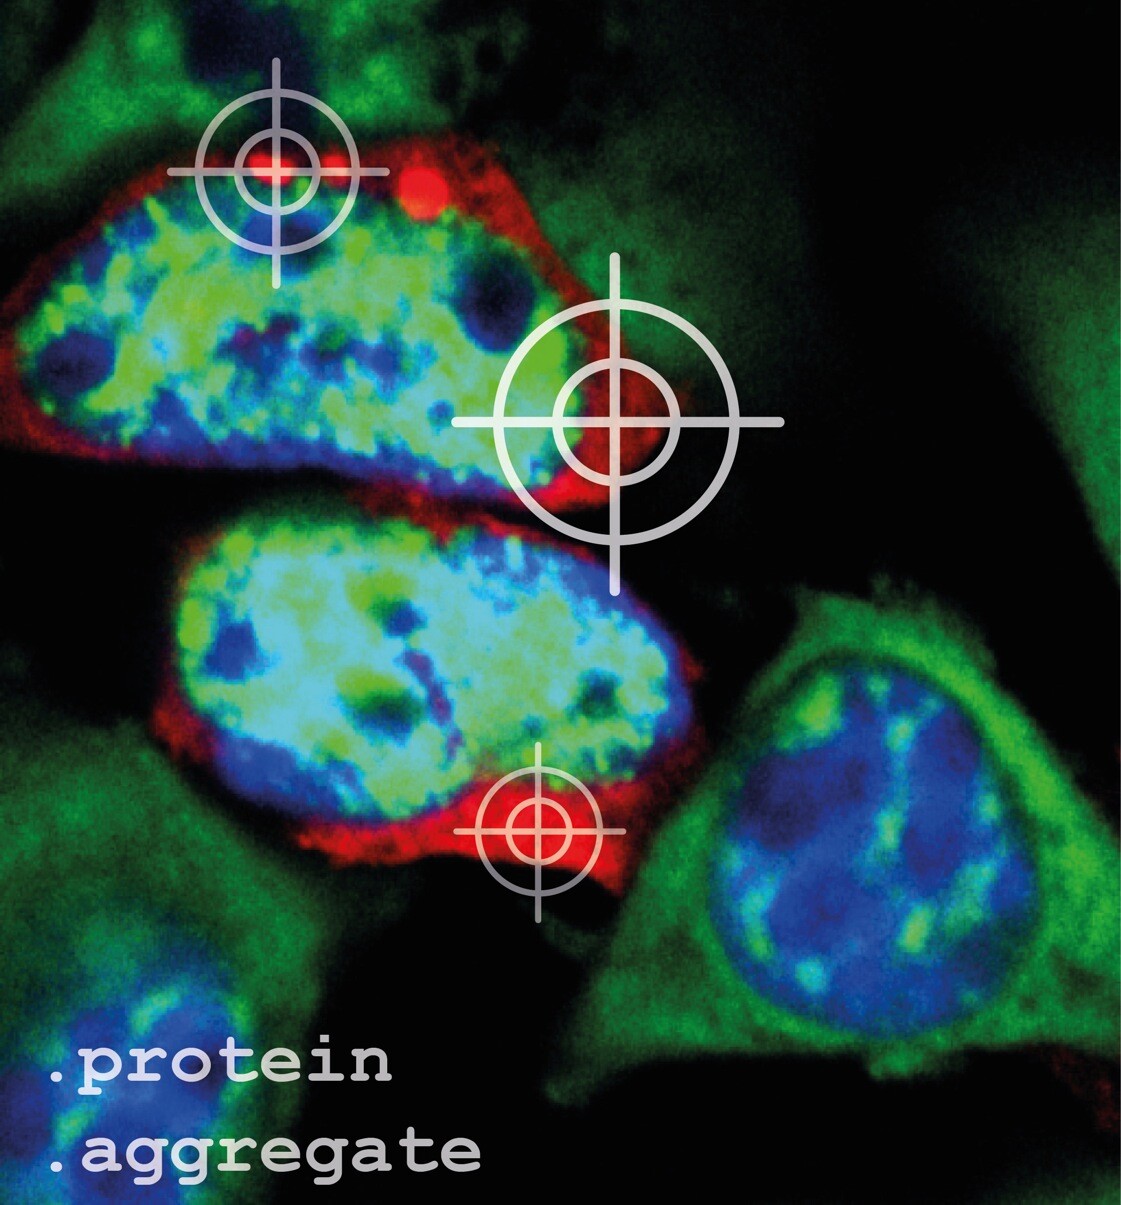 Damit Proteinaggregate (rot) in den Zellen unter dem Mikroskop sichtbar sind, müssen sie angefärbt werden. Zellkerne wurden blau, und mRNAs, die Bauanleitung für Proteine, wurden grün angefärbt. Andreas Woerner © MPI für Biochemie